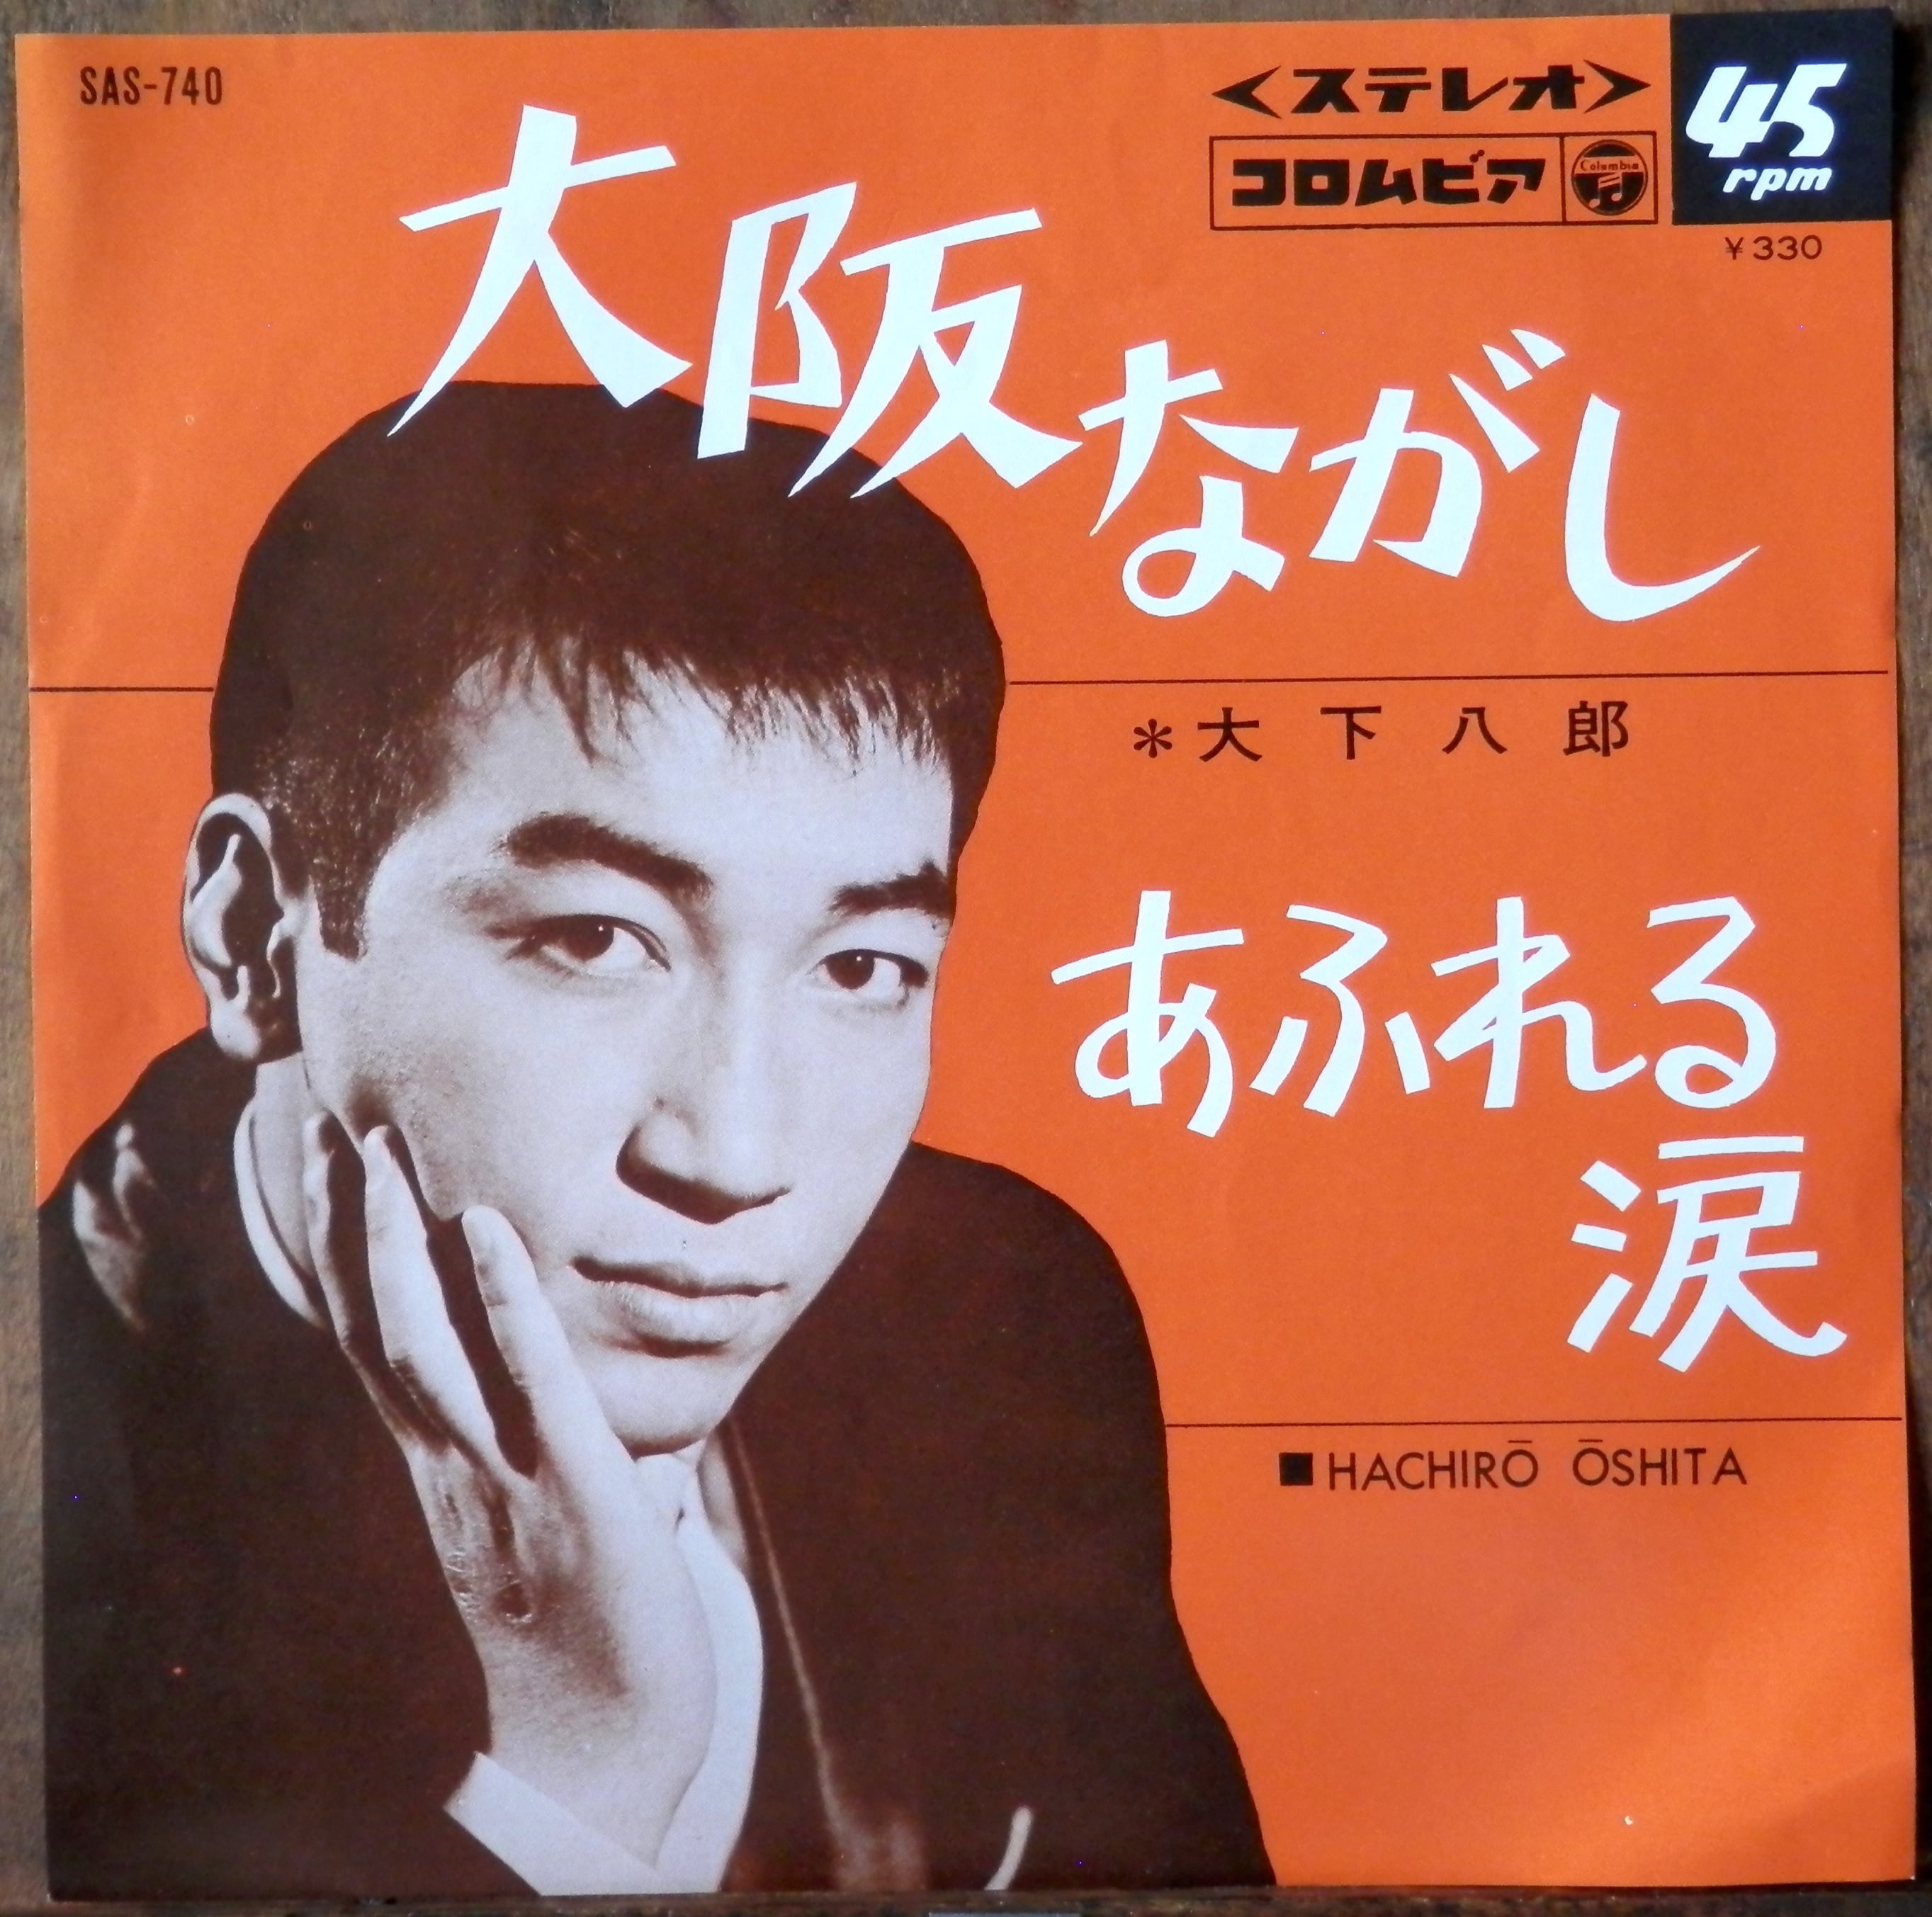 66【EP】大下八郎 大阪ながし 音盤窟レコード